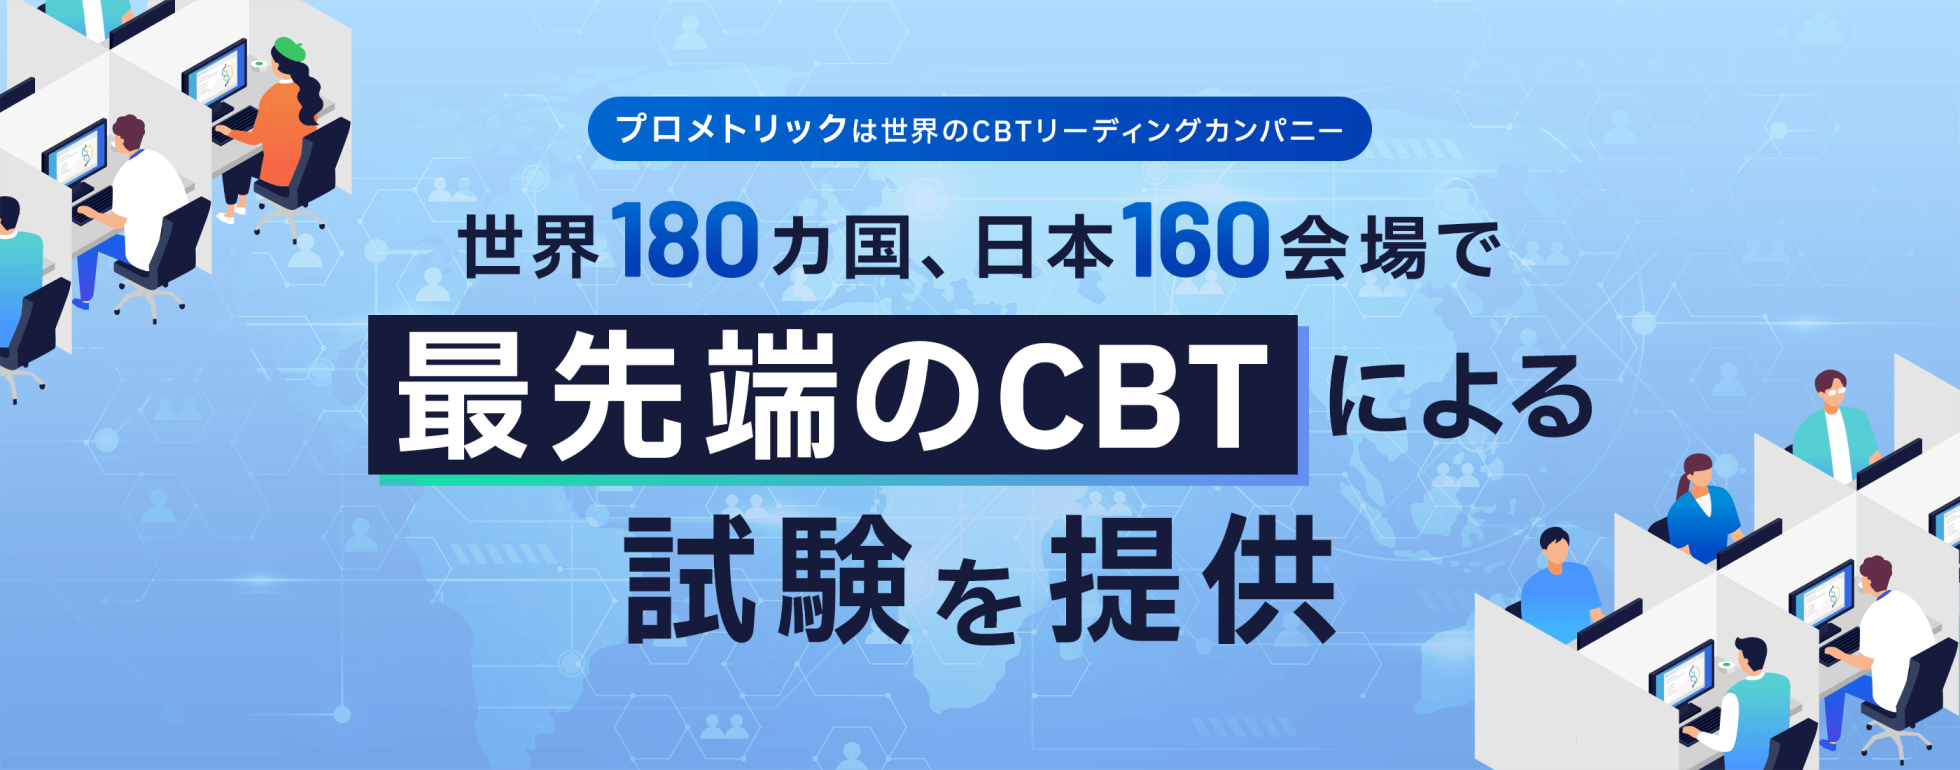 【プロメトリックは世界のCBTリーディングカンパニー】世界180カ国、日本160会場で最先端のCBTによる試験を提供